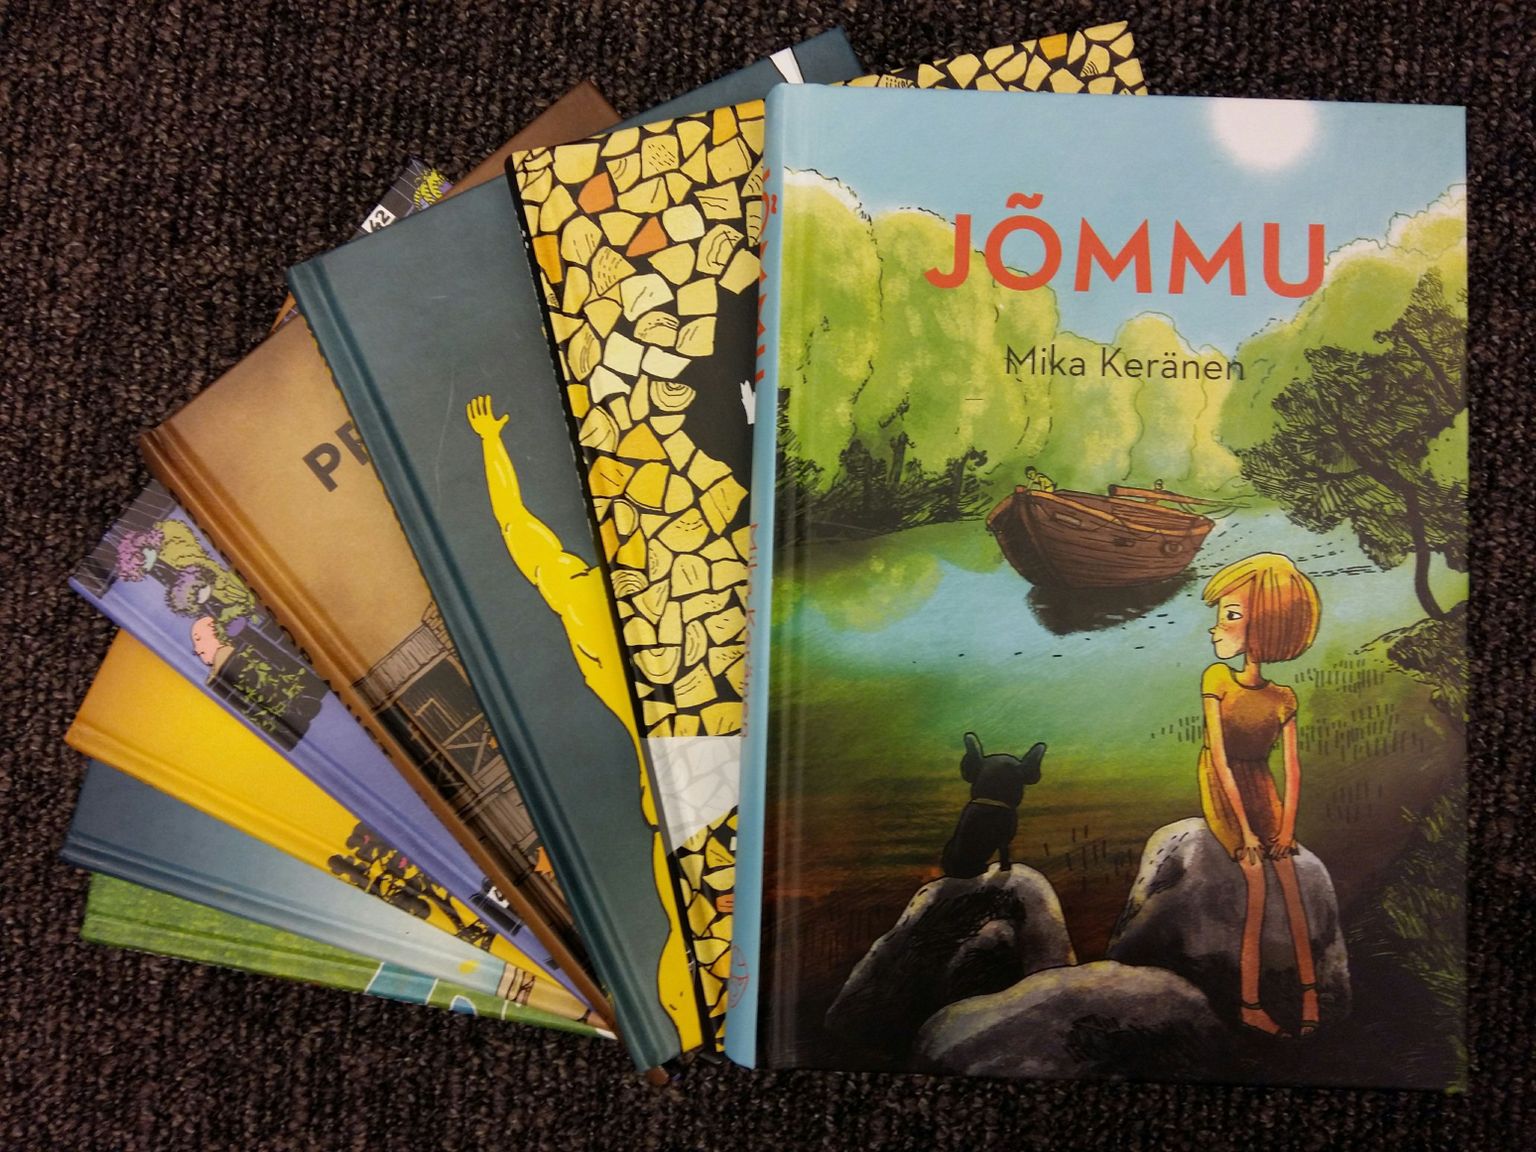 Mika Keräneni «Jõmmu», mille on illustreerinud ja kujundanud Marja-Liisa Plats ning kirjastanud Keropää, on Supilinna salaseltsi sarja kaheksas raamat.